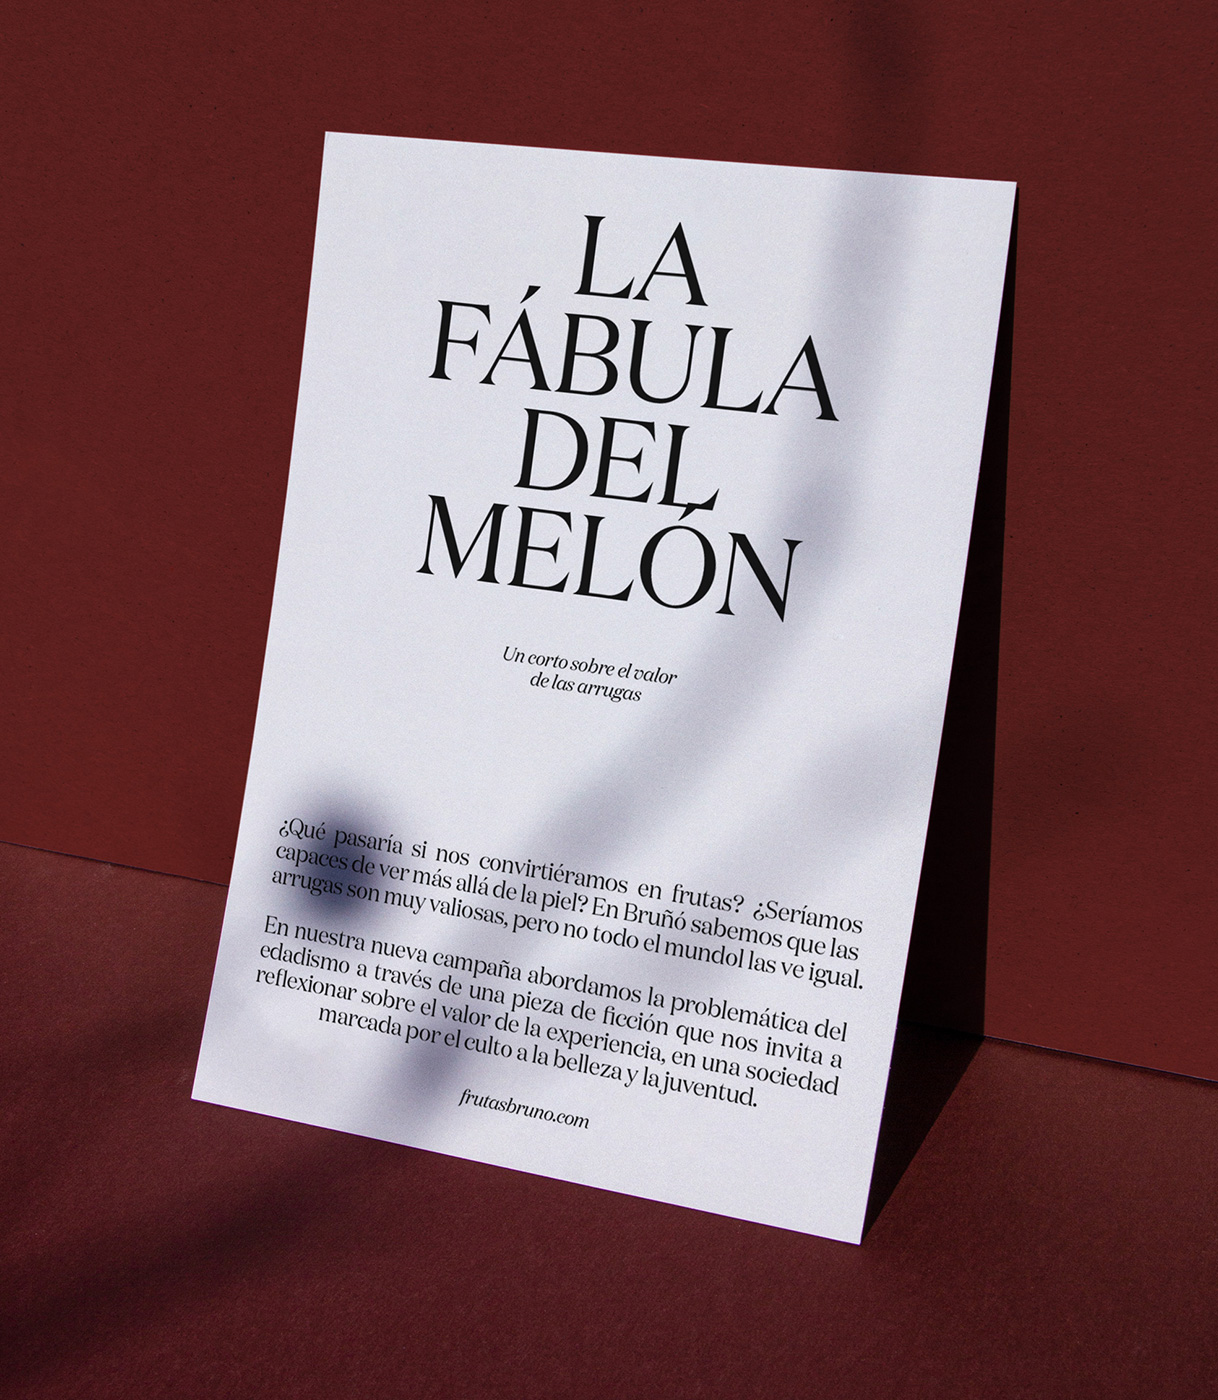 Cartel impreso explicando el vídeo La fábula del melón